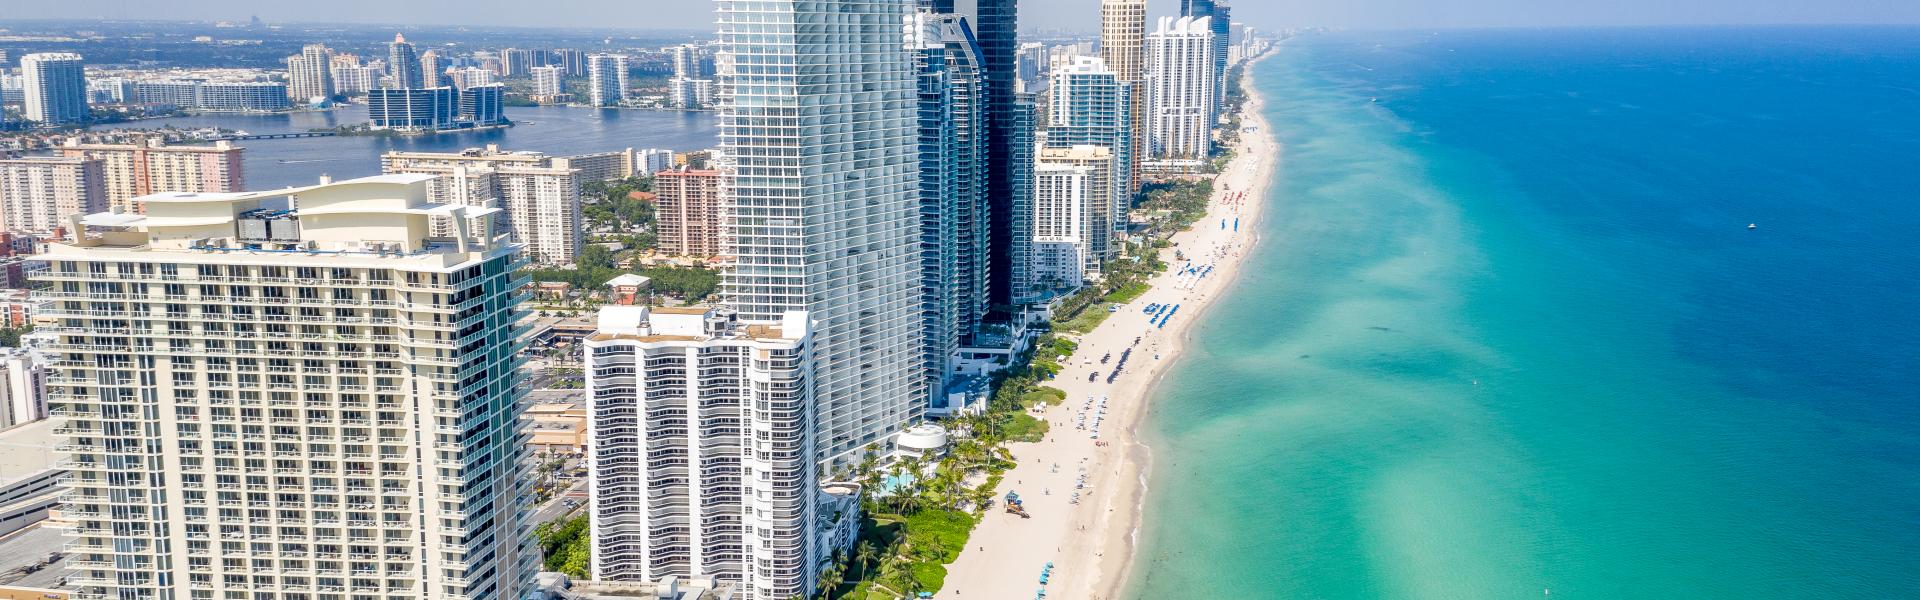 Ferienwohnungen & Ferienhäuser für Urlaub in Miami - Casamundo